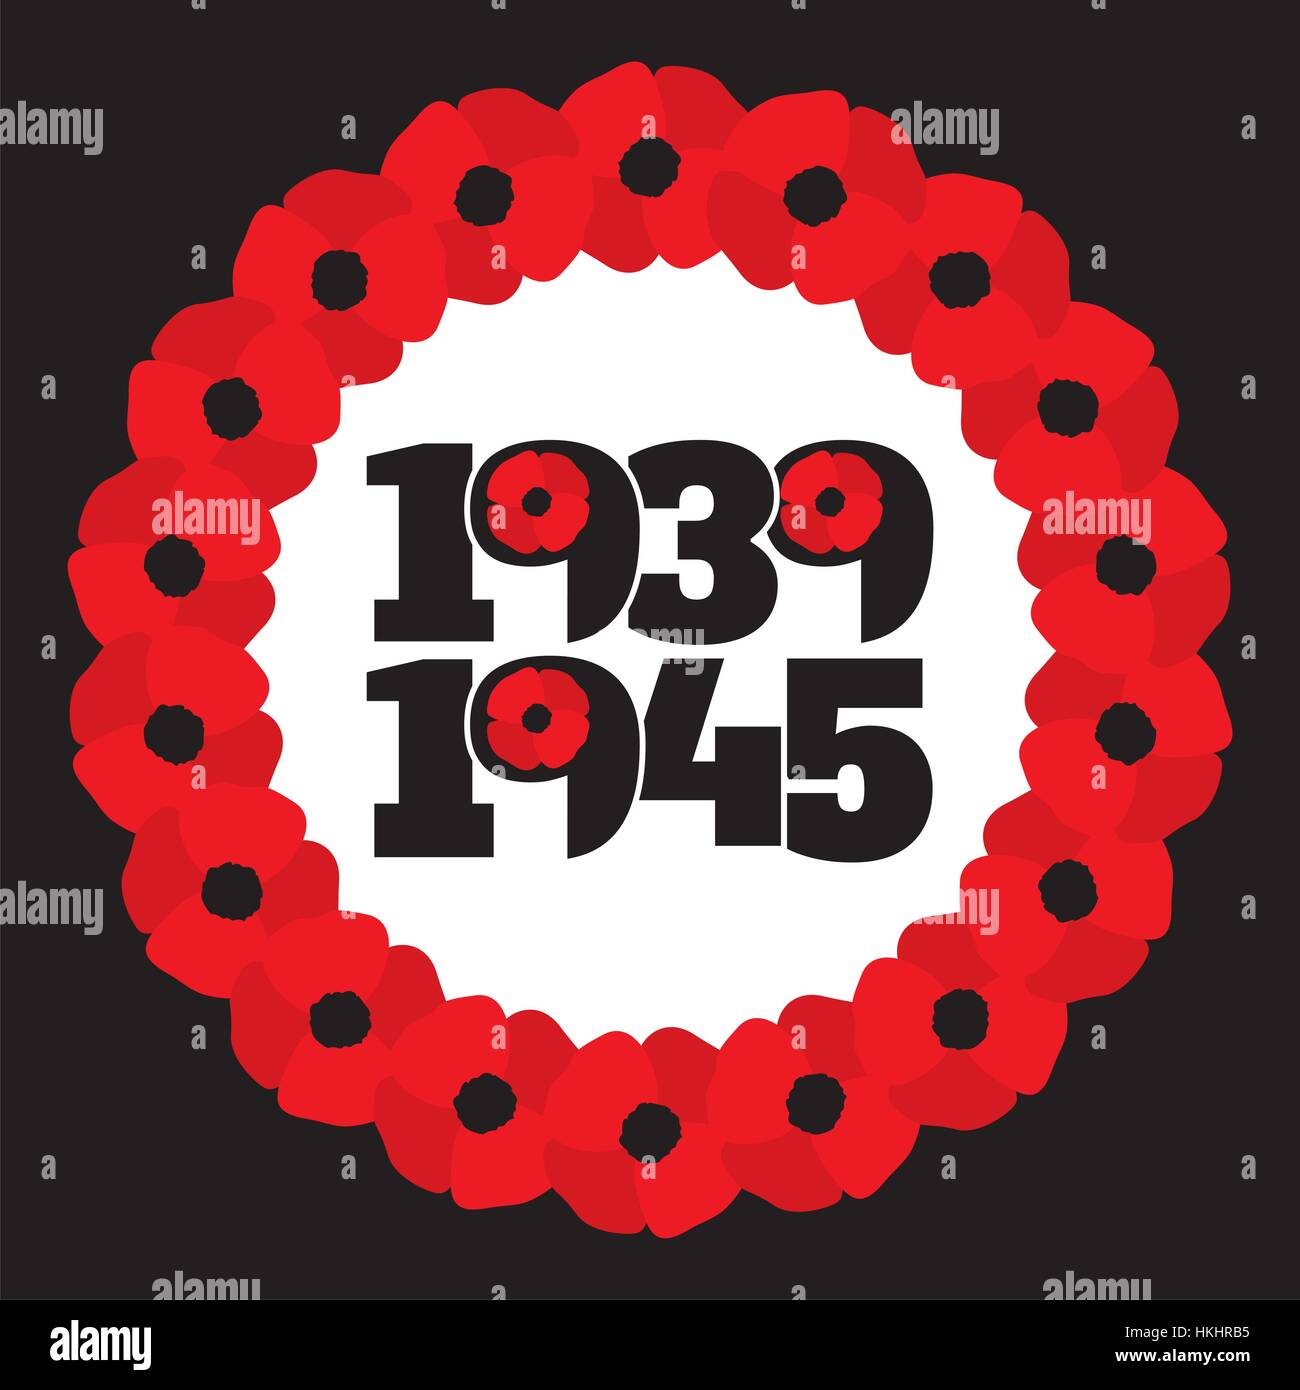 Símbolo conmemorativo de la Segunda Guerra Mundial con las fechas 1939-1945, corona con estilizados y amapolas frase recuerde. Ilustración vectorial en formato EPS8. Ilustración del Vector